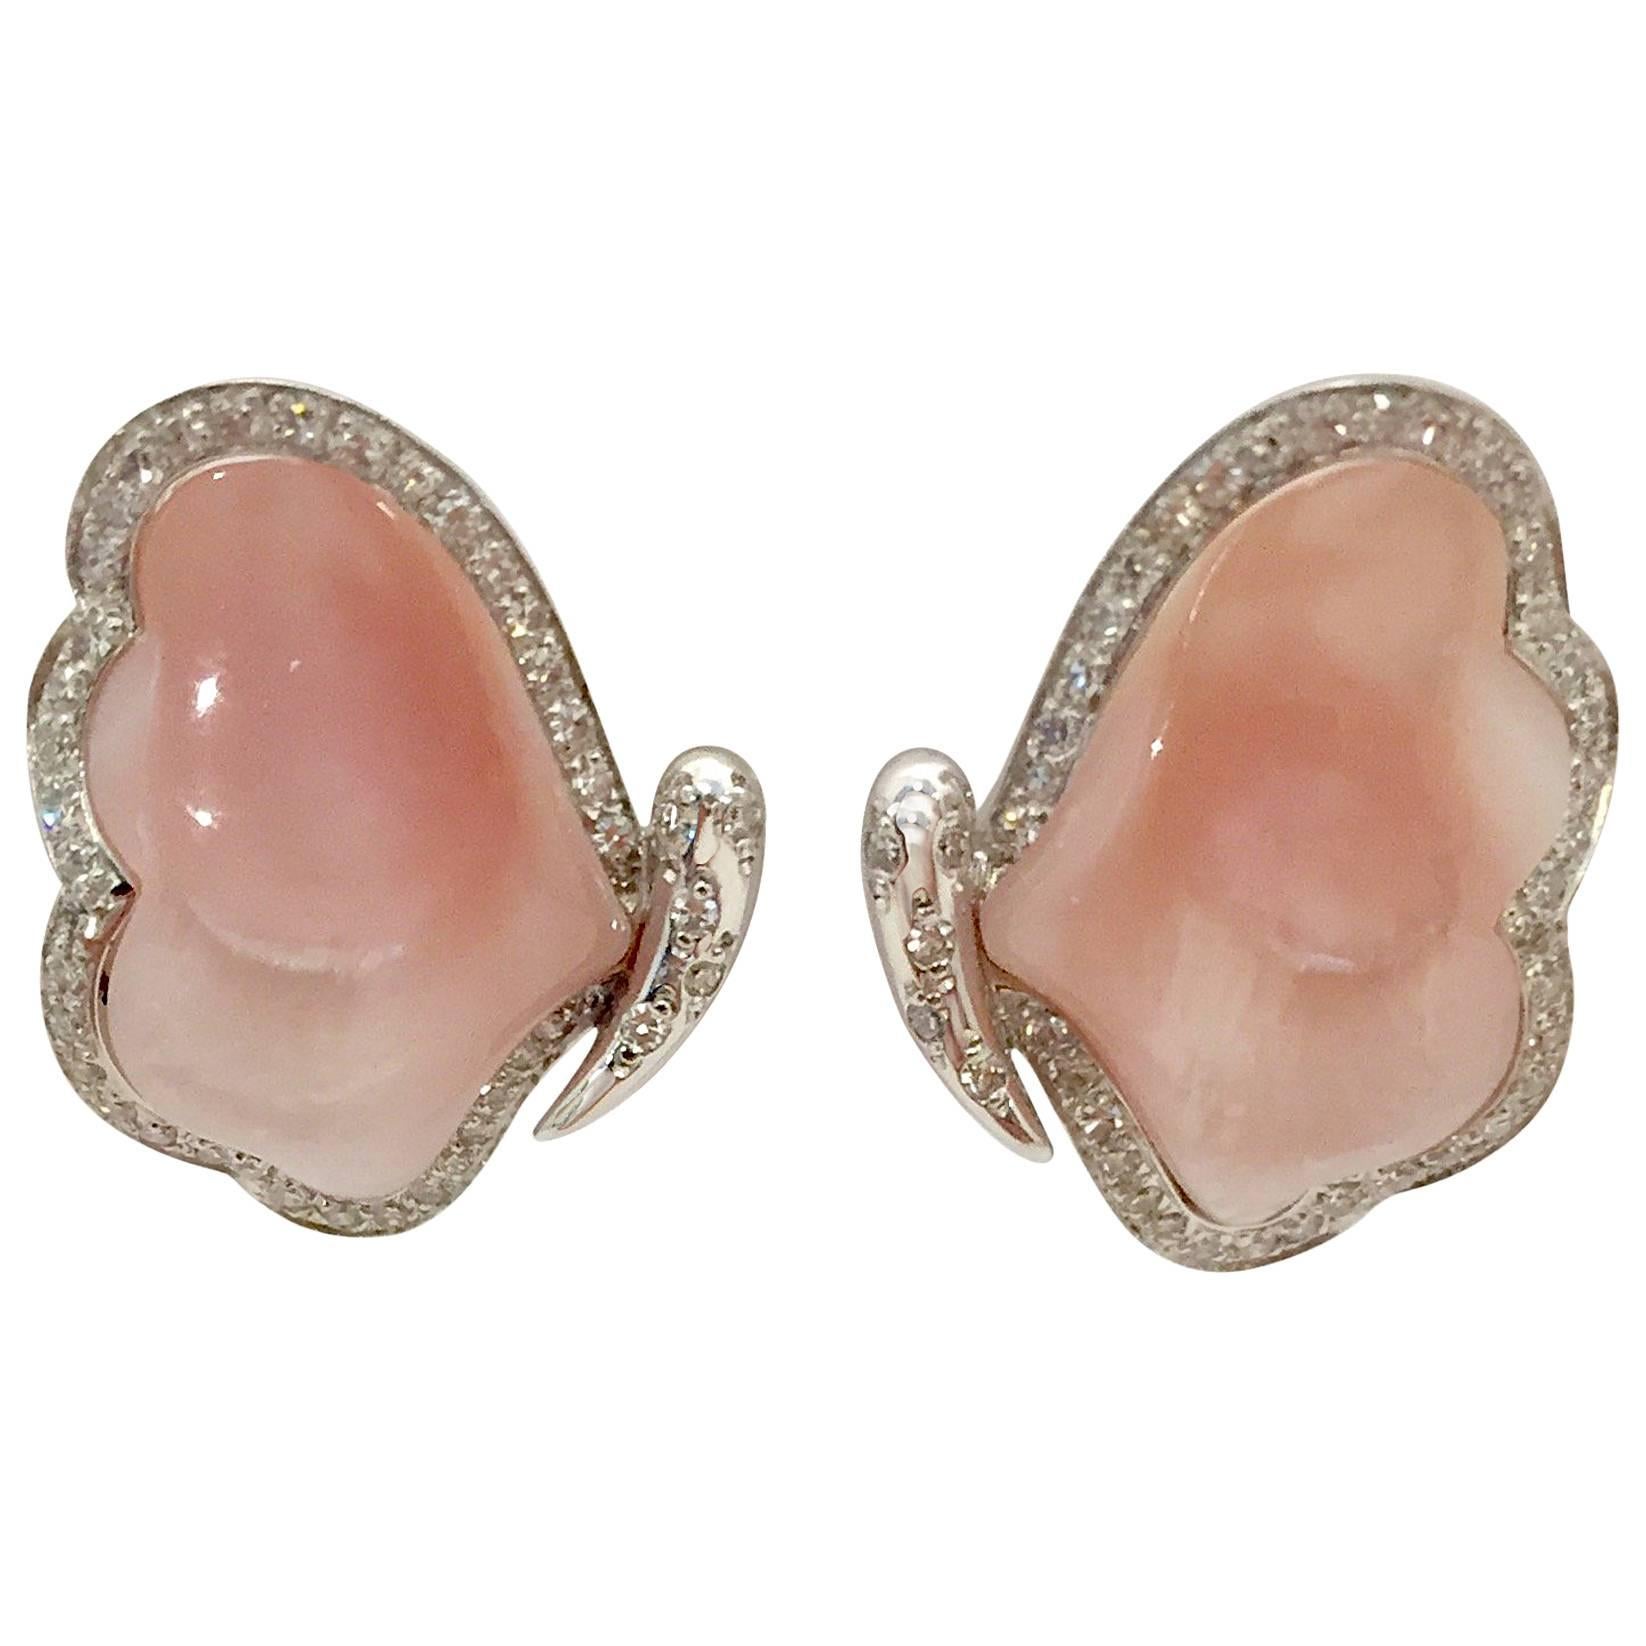 Amazing Agate Diamond Butterfly Earrings